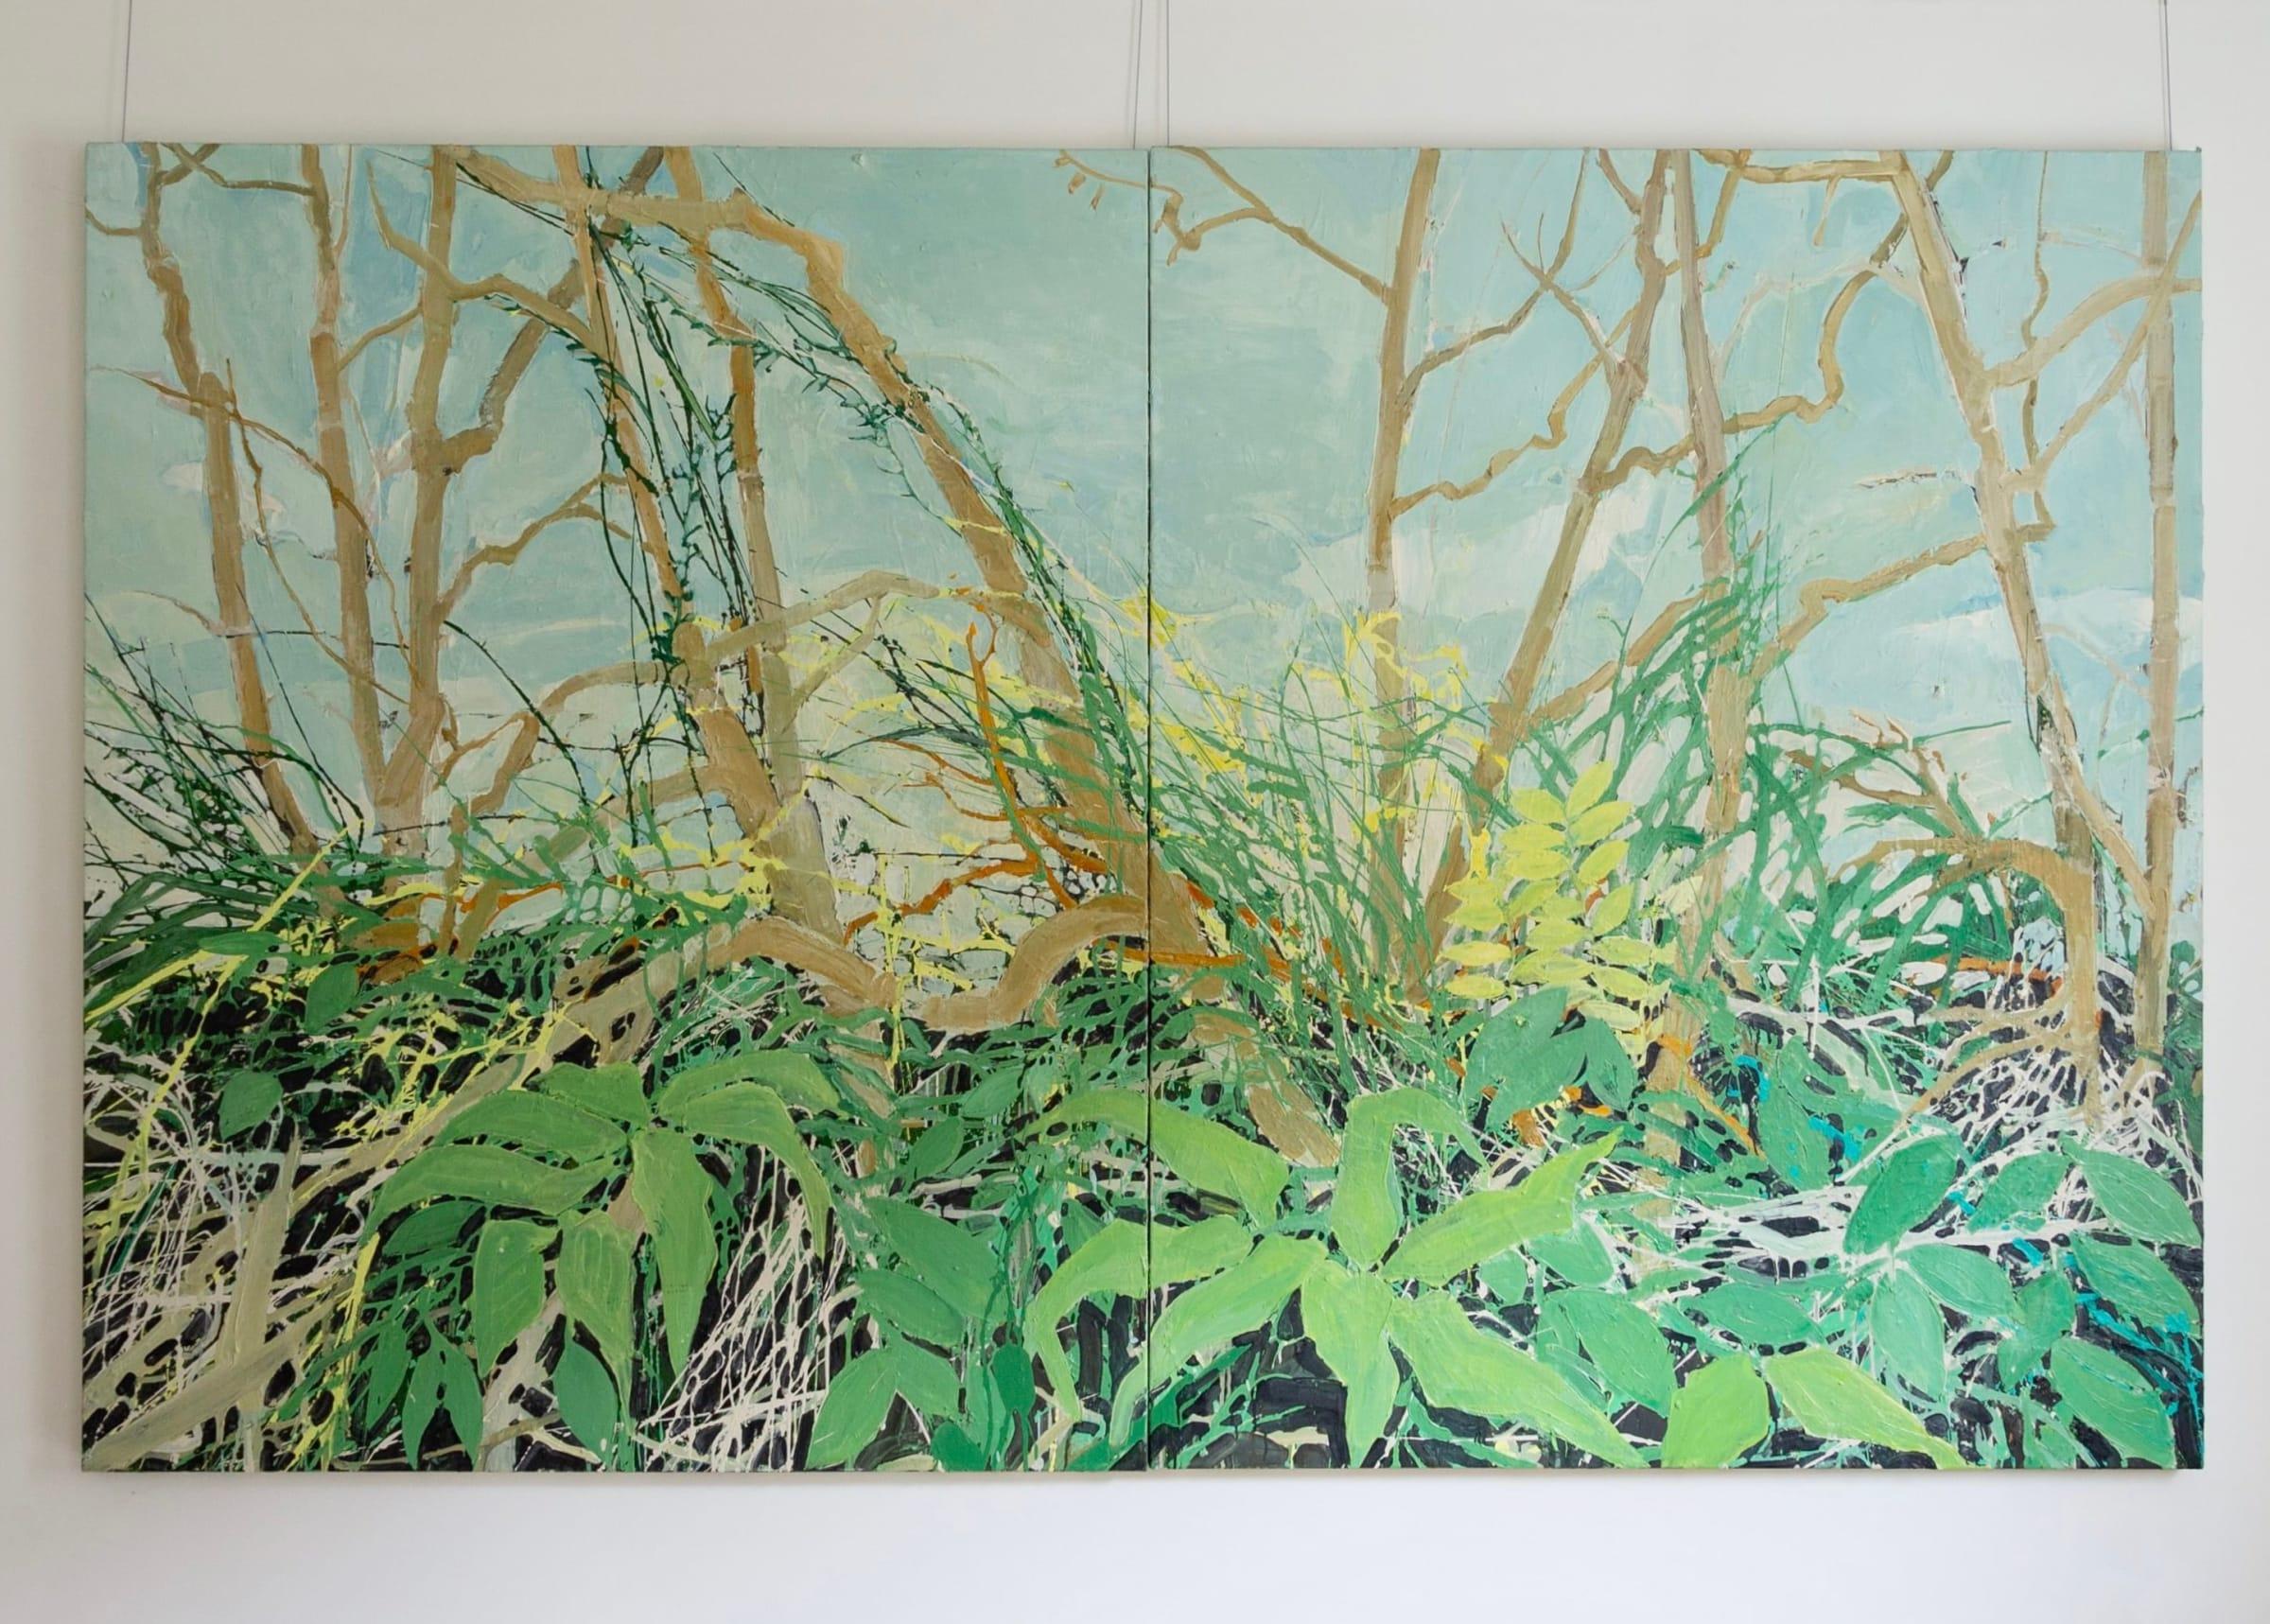 Cockieleekie, Öl auf zwei Leinwänden, Gemälde von Ffiona Lewis, 2020 – Painting von Unknown